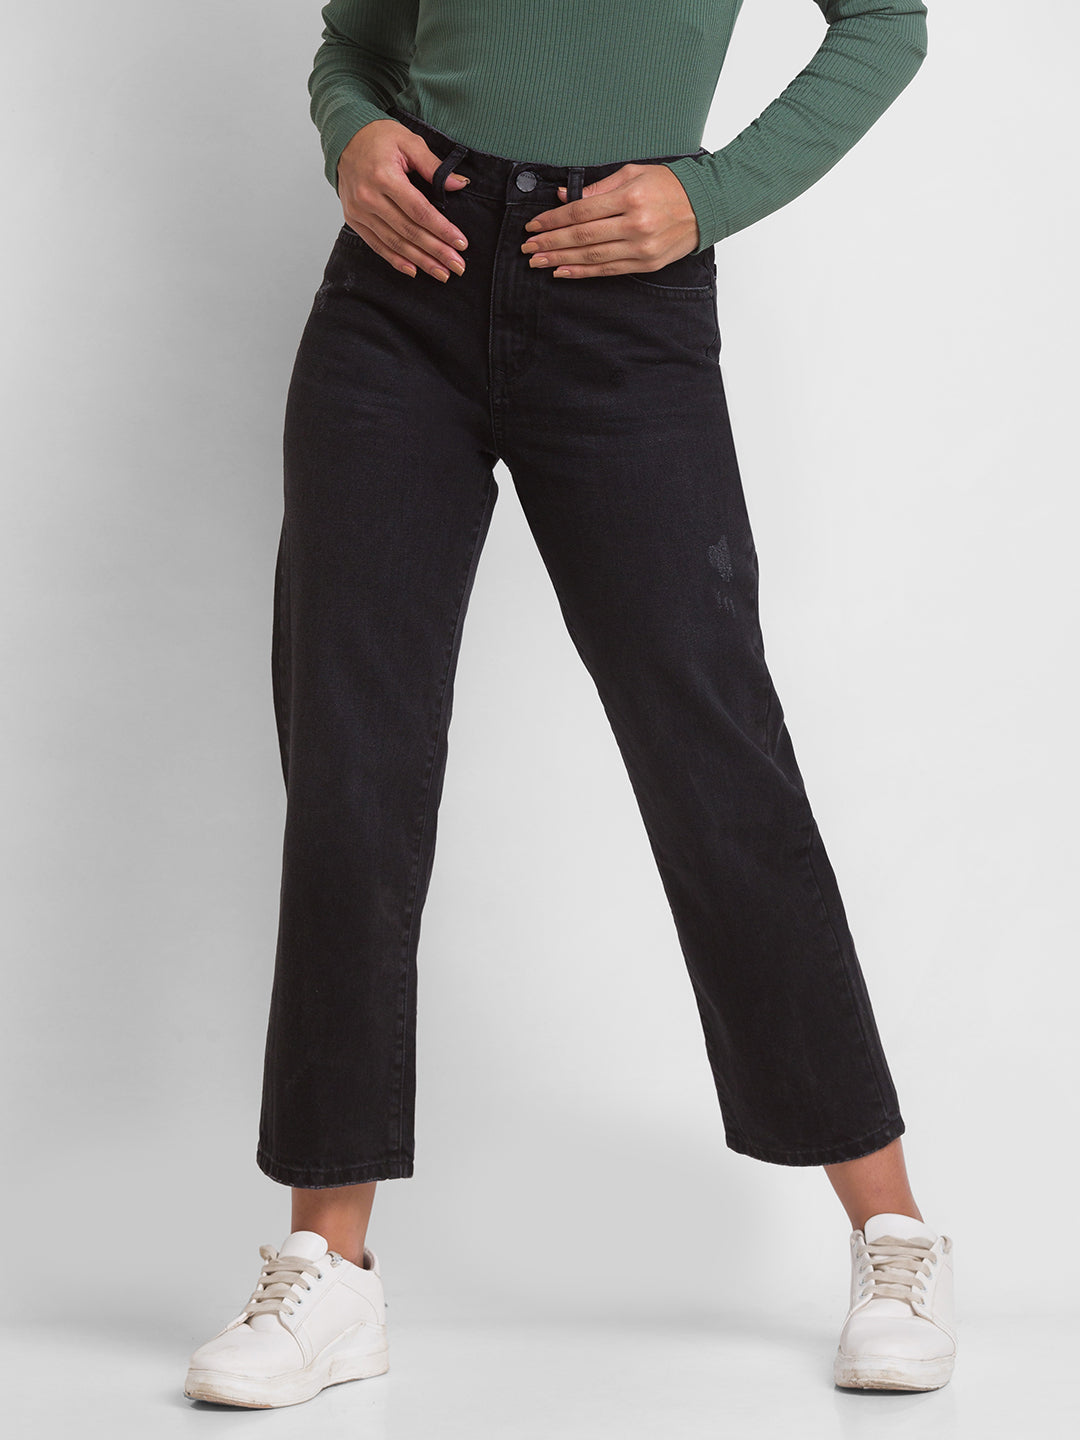 Spykar Black Cotton Straight Fit Regular Length Jeans For Women